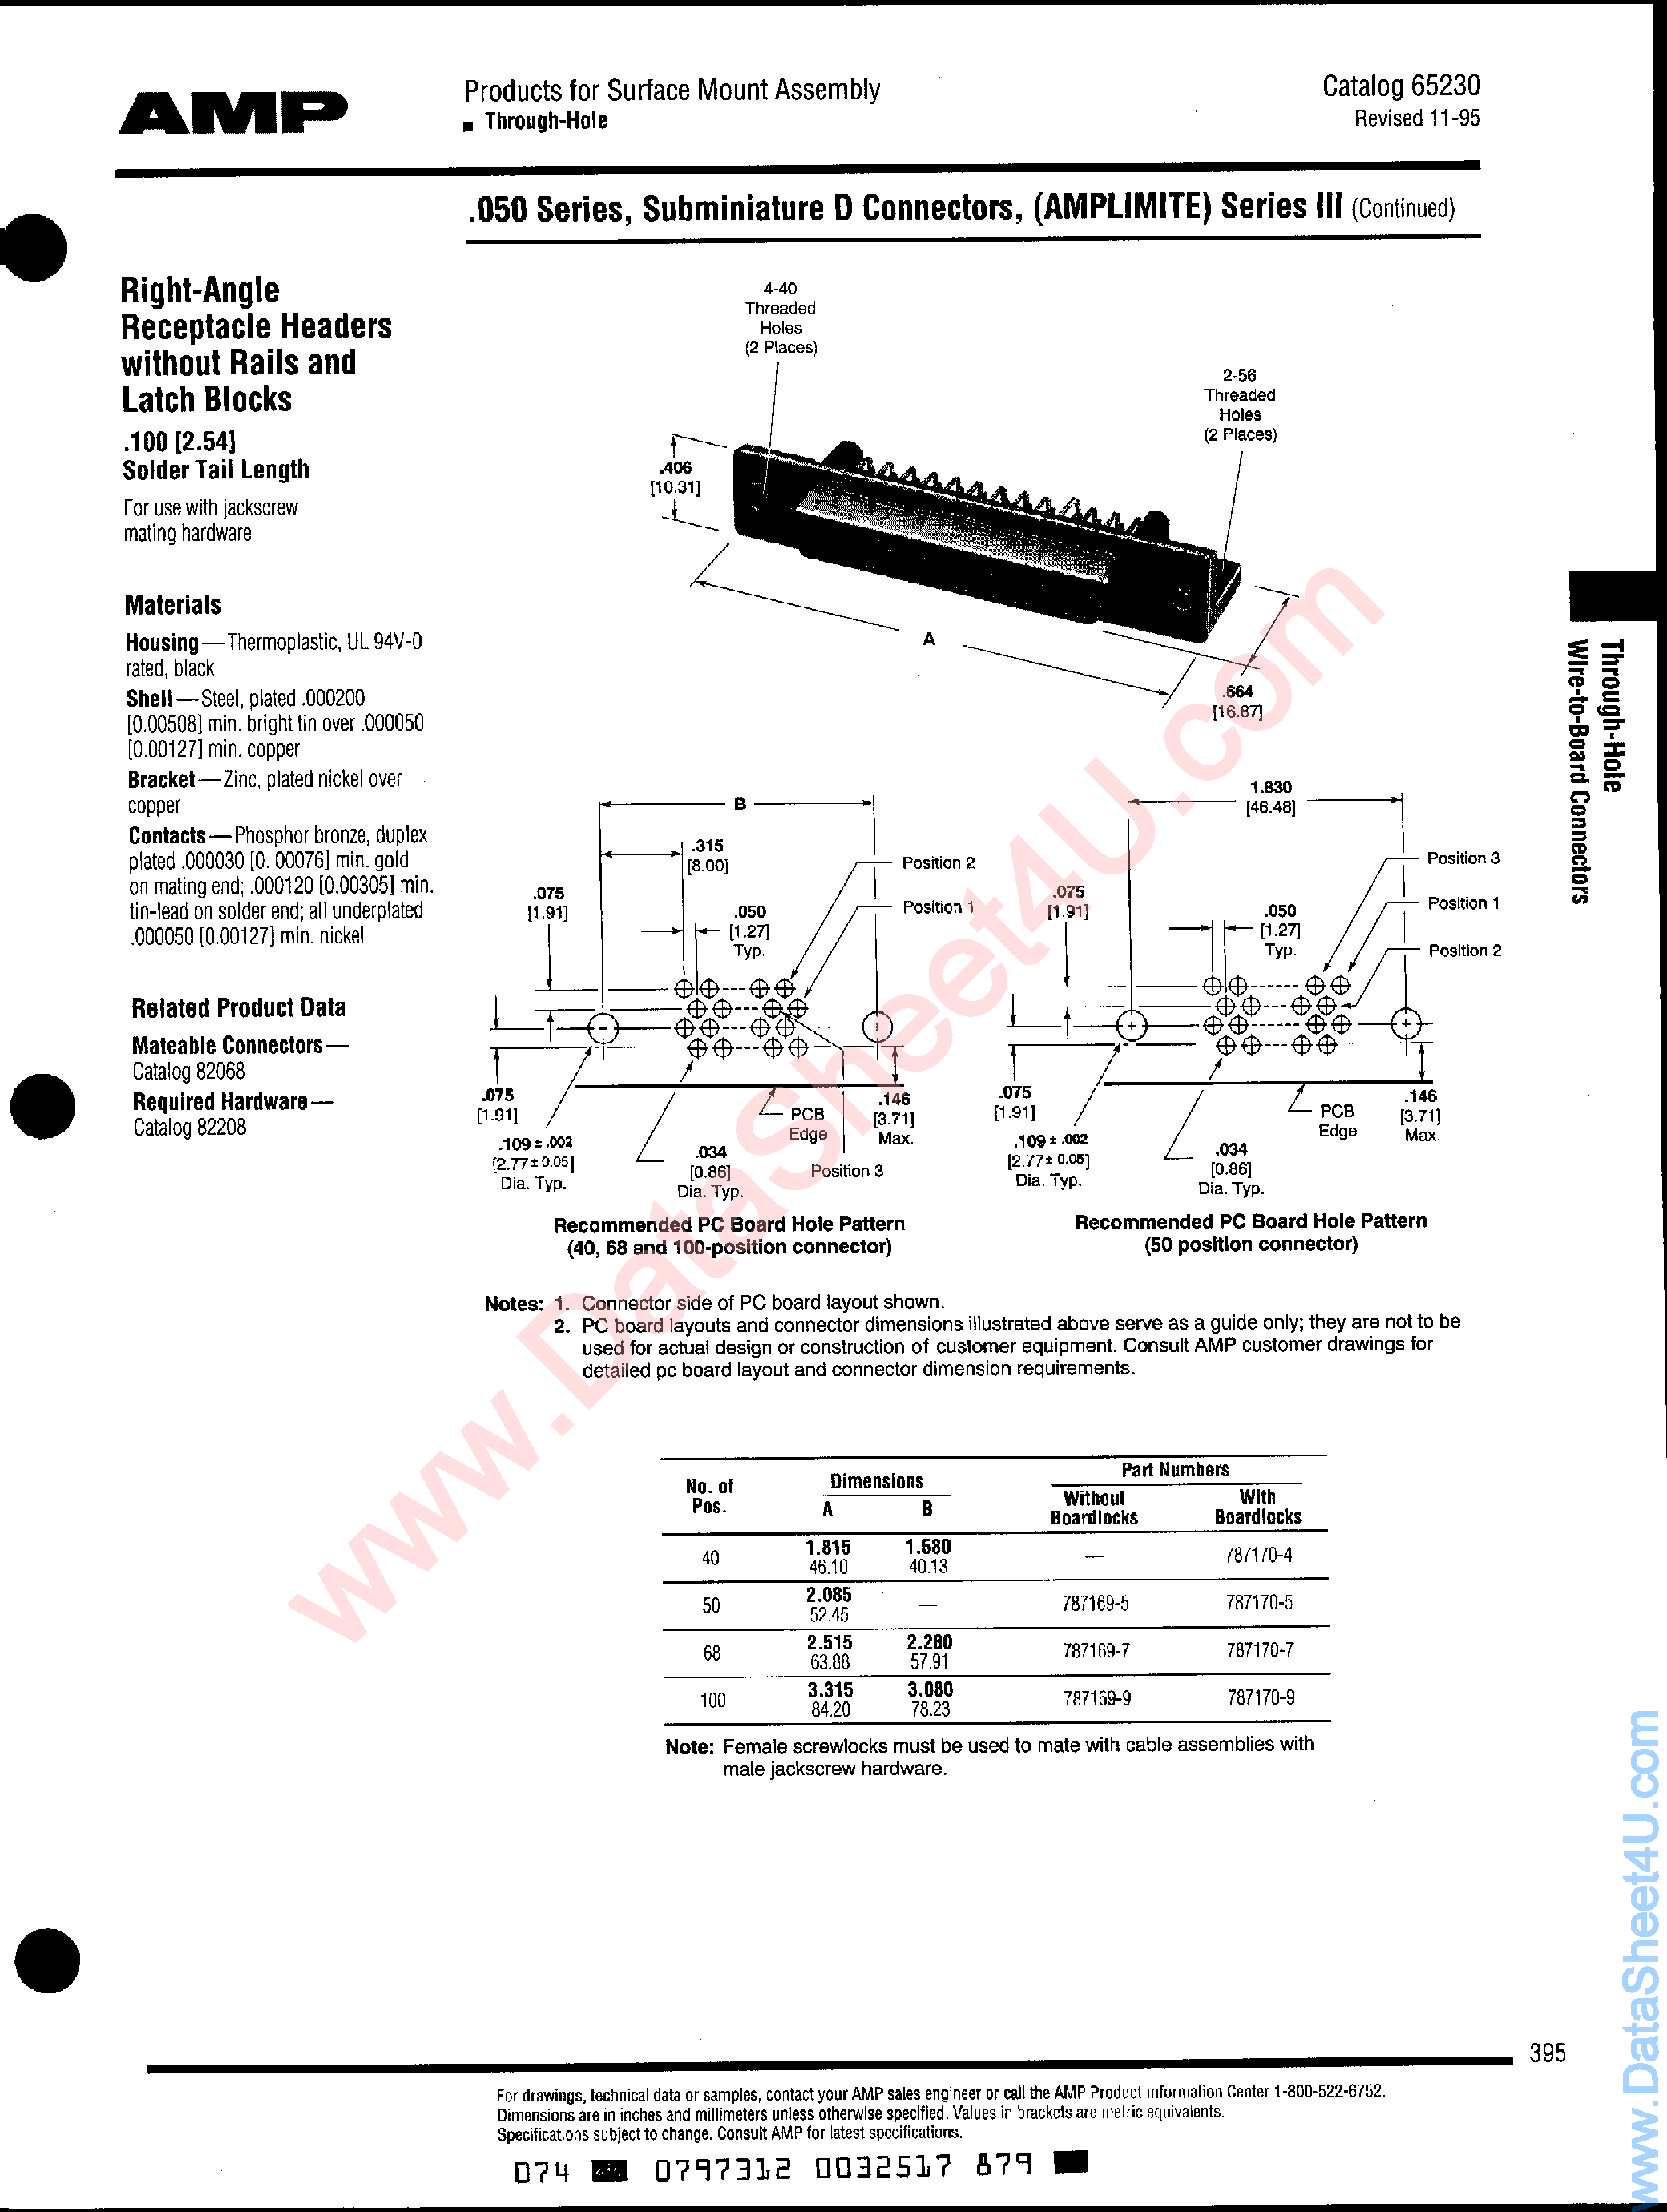 Datasheet 787170-x - (787170-x) D Connectors page 1